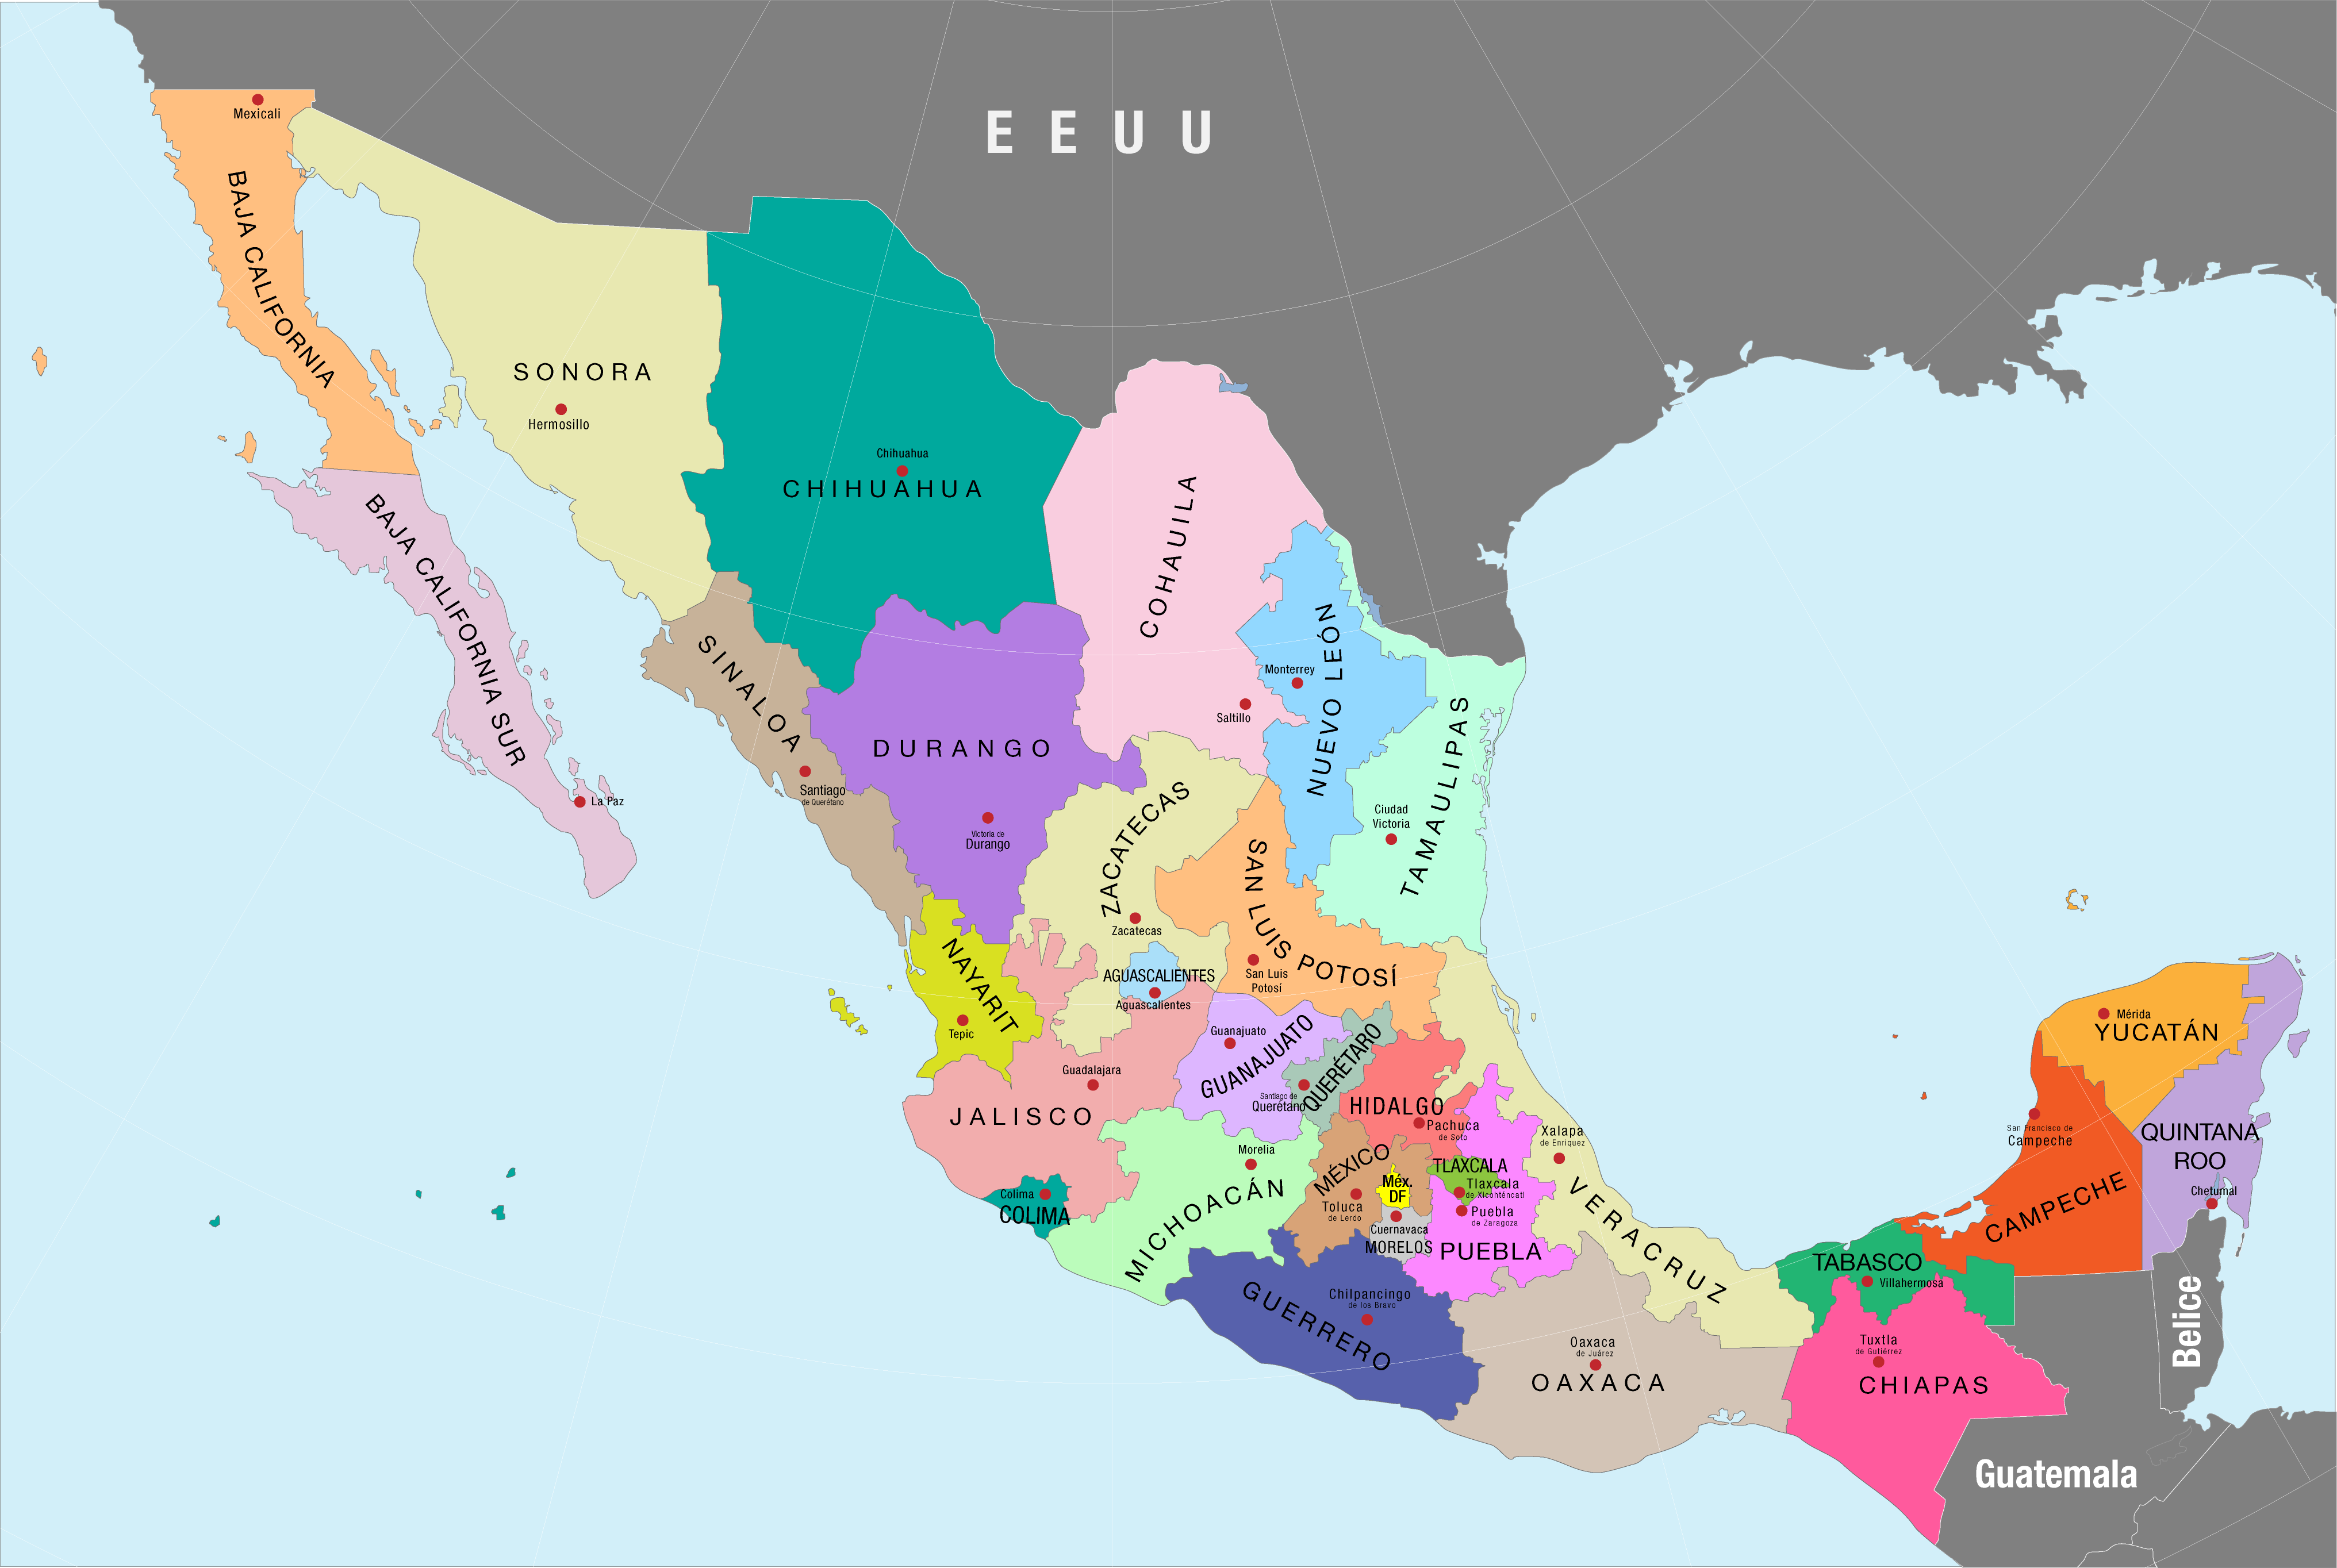 Mapa político de México